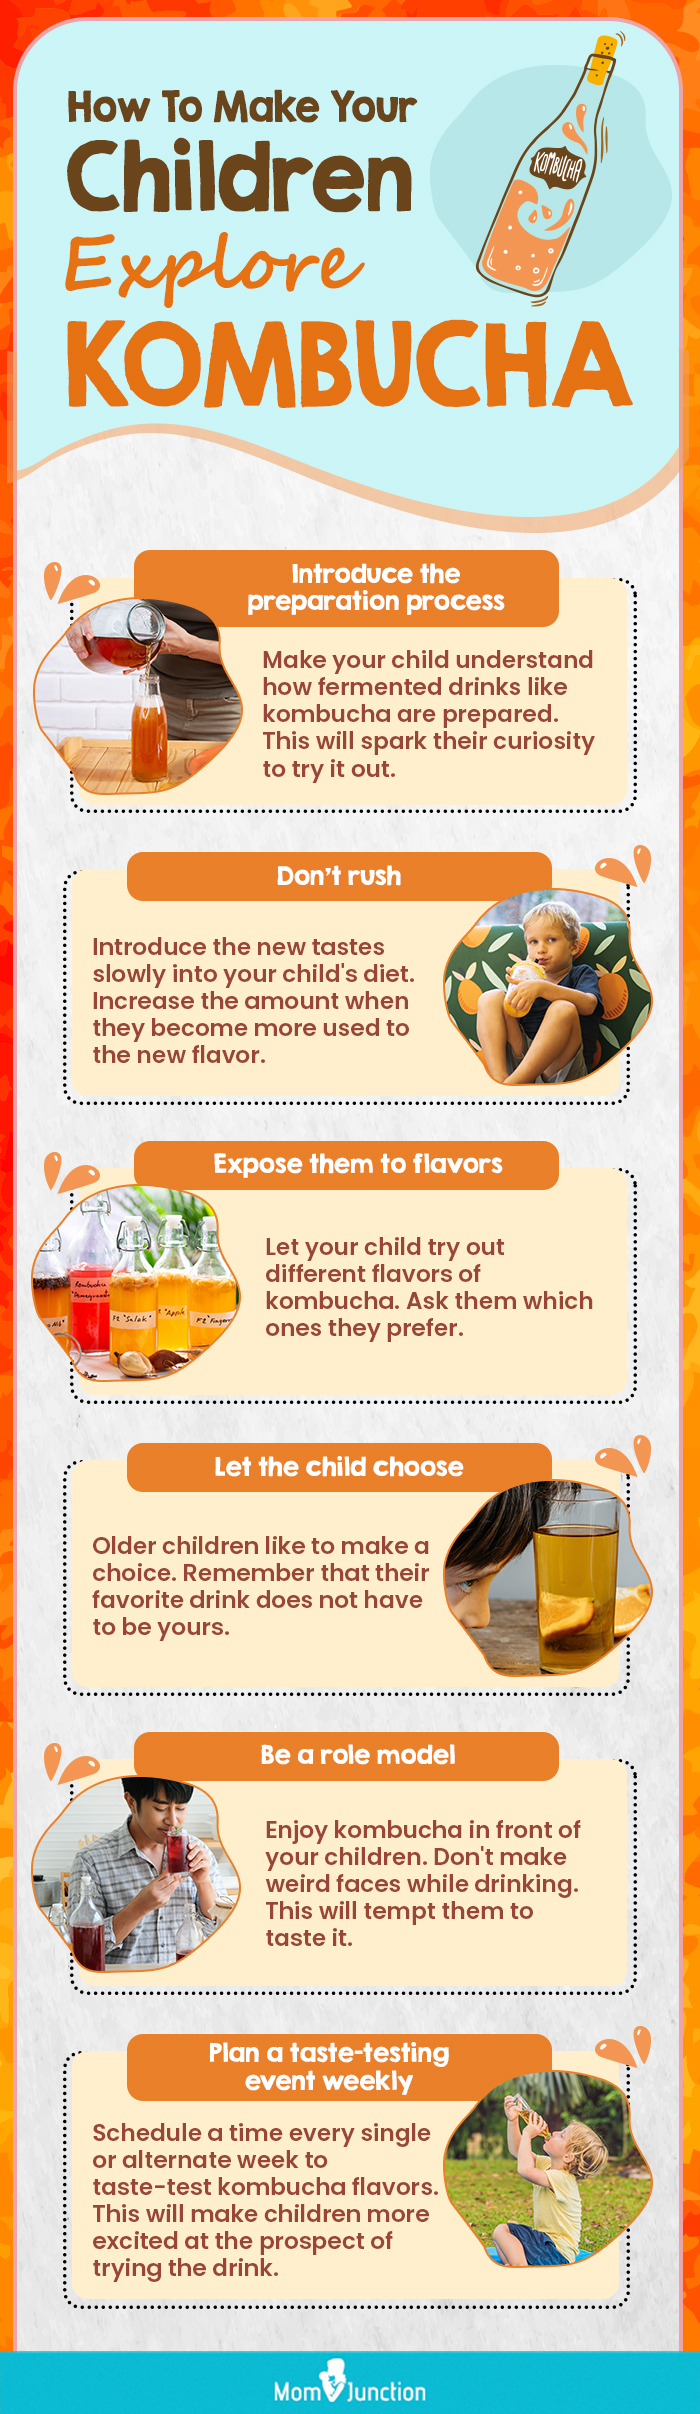 how to make your children explore kombucha (infographic)